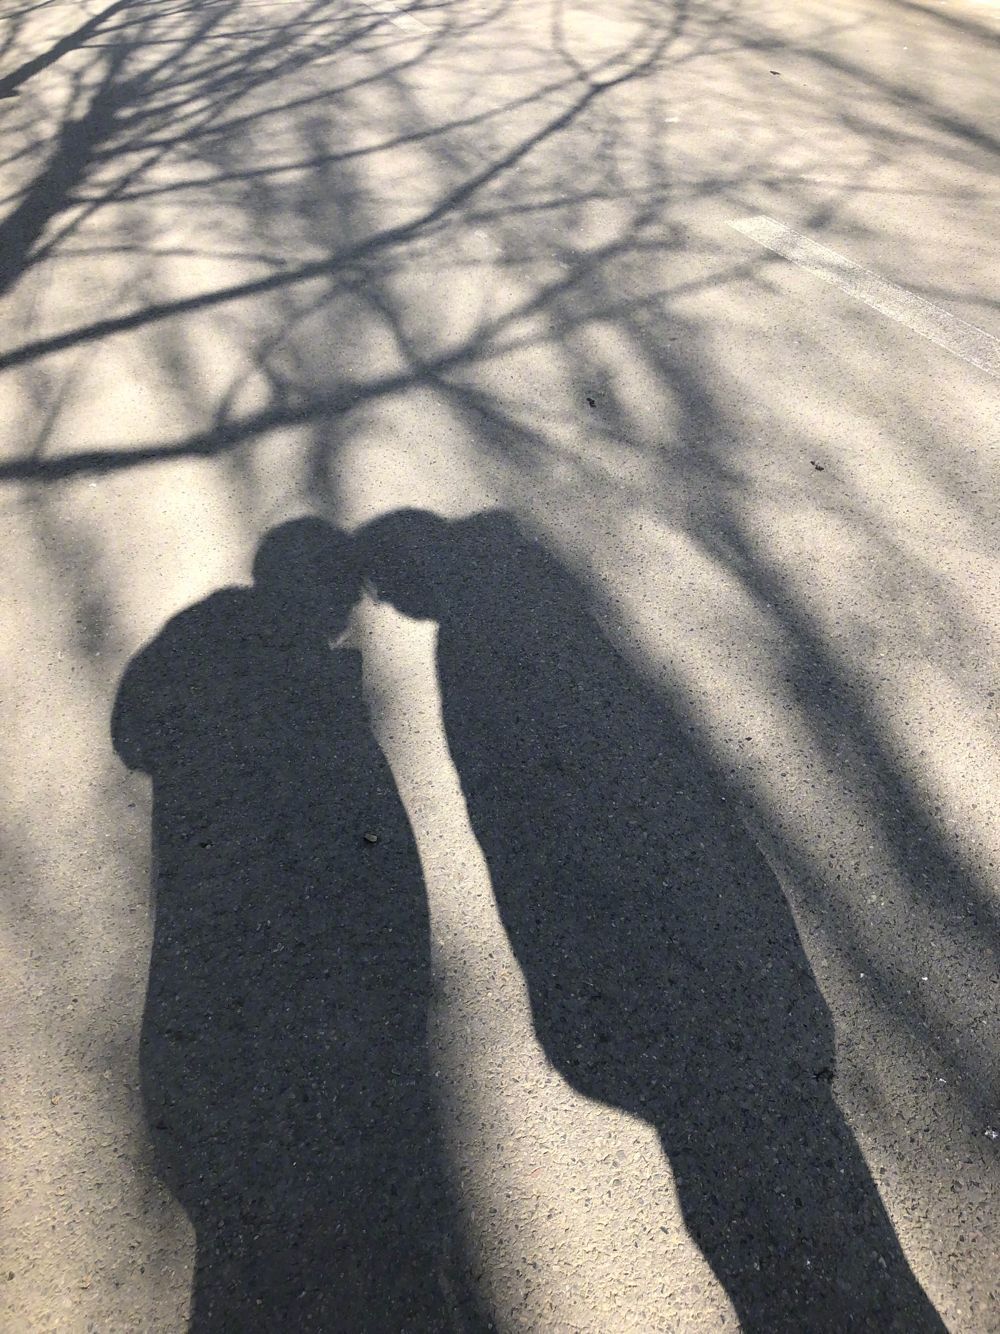 第三张照片是两人在树下牵手,阳光下的影子很美好